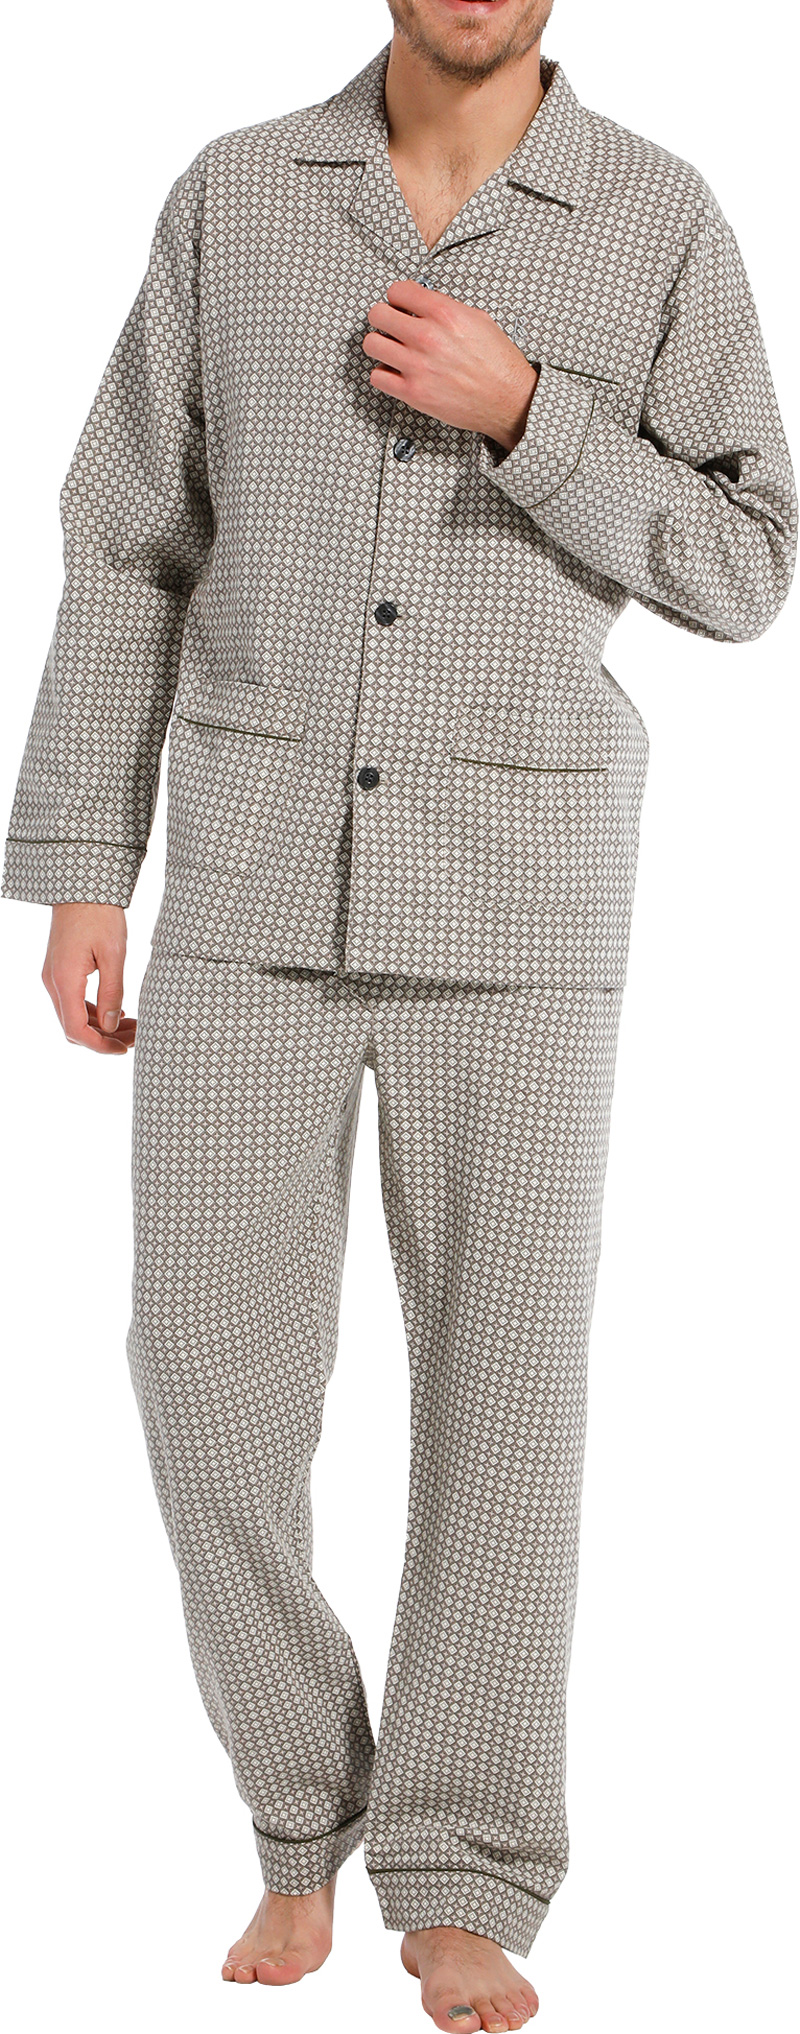 Robson pyjama met print voorkant